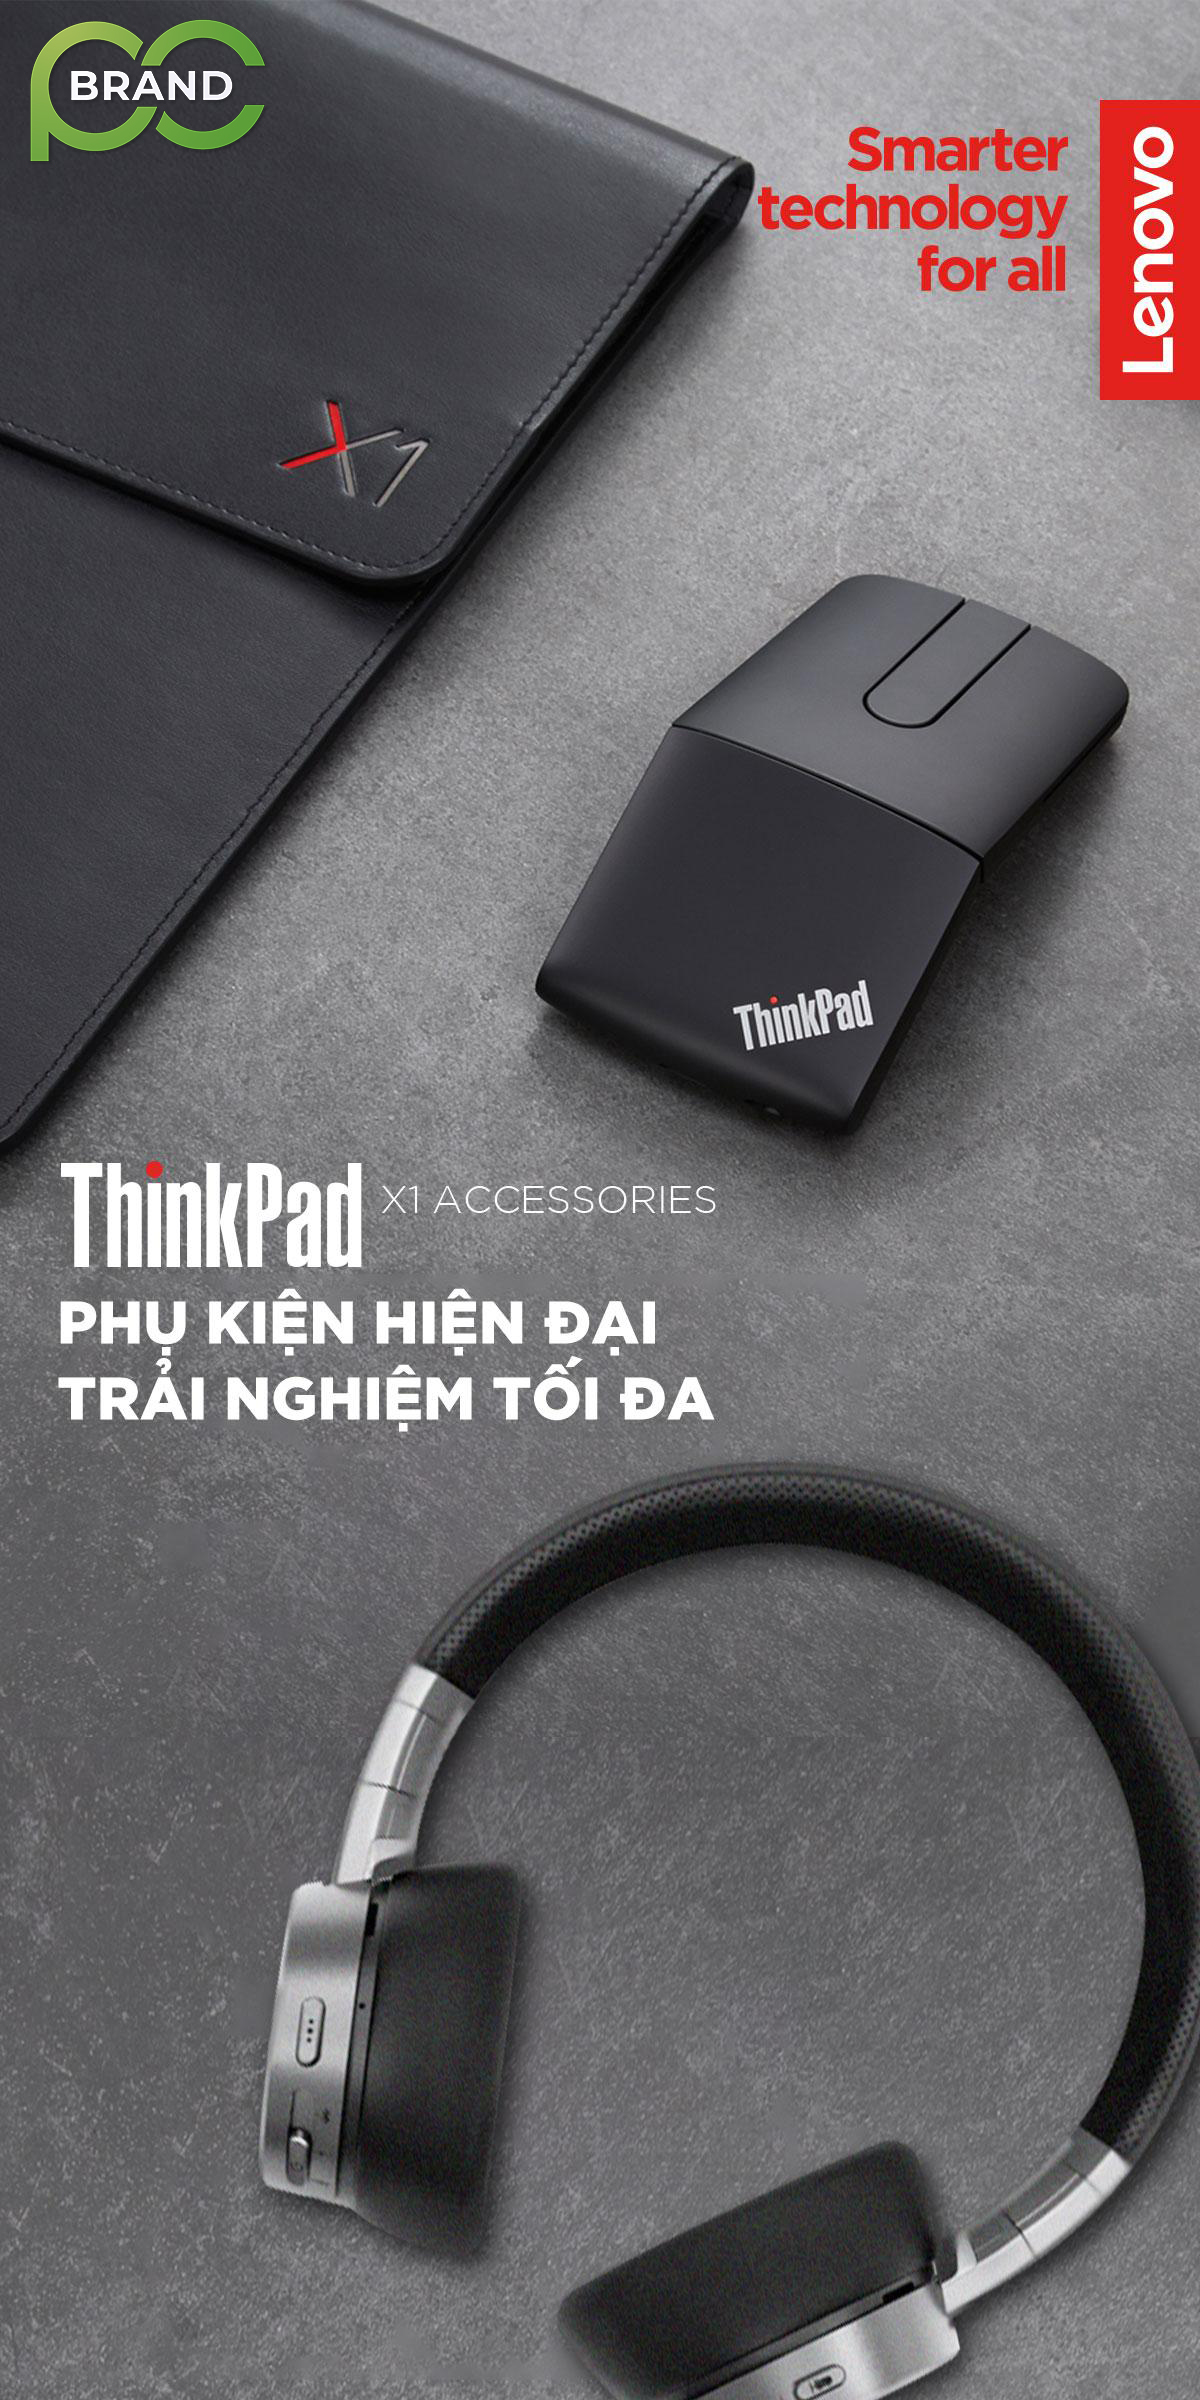 Thinkpad X1: PHỤ KIỆN HIỆN ĐẠI, TRẢI NGHIỆM TỐI ĐA.